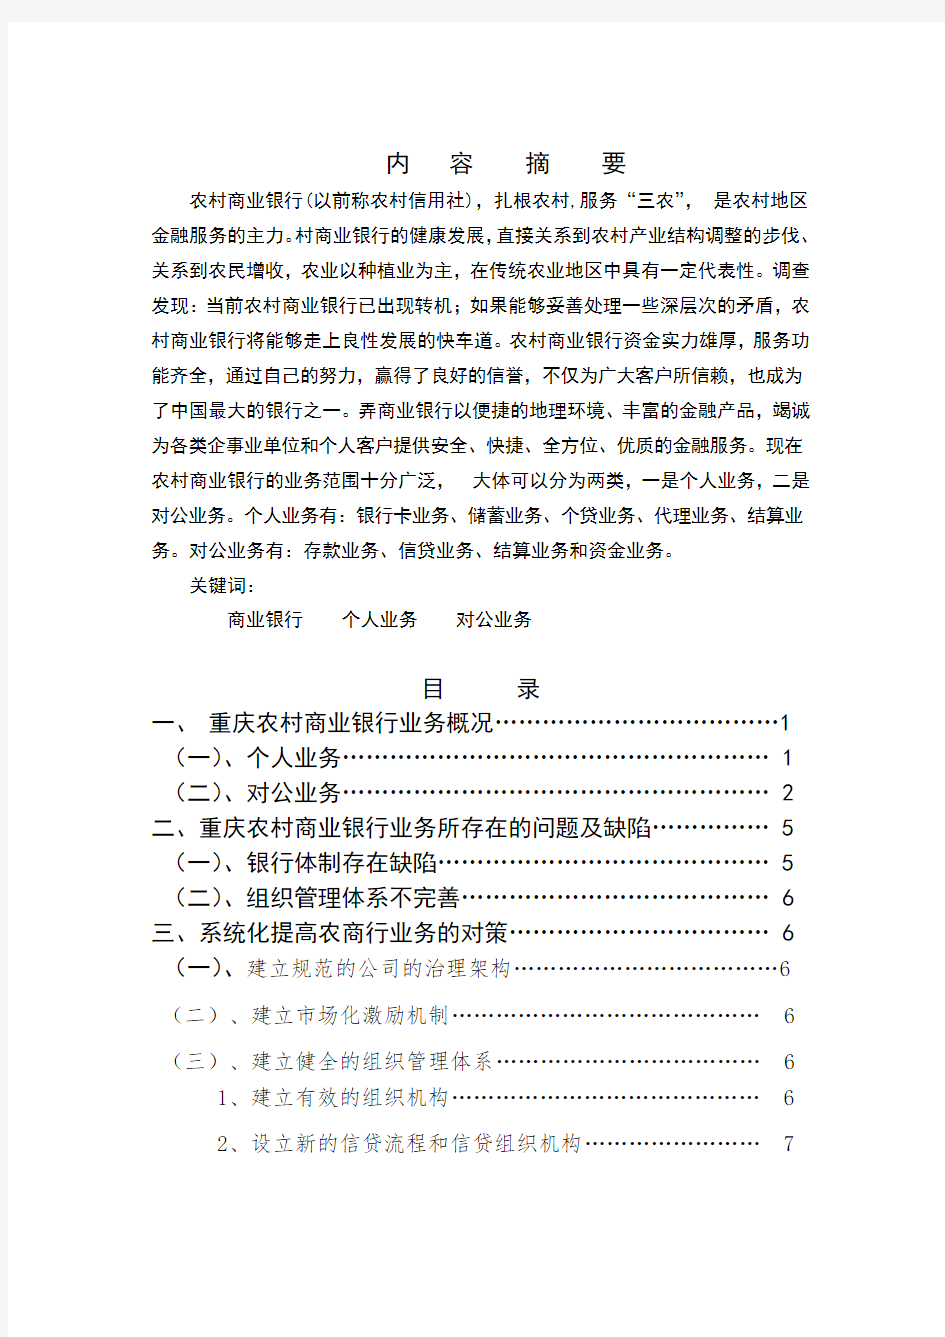 关于重庆农商行业务现状的调查报告